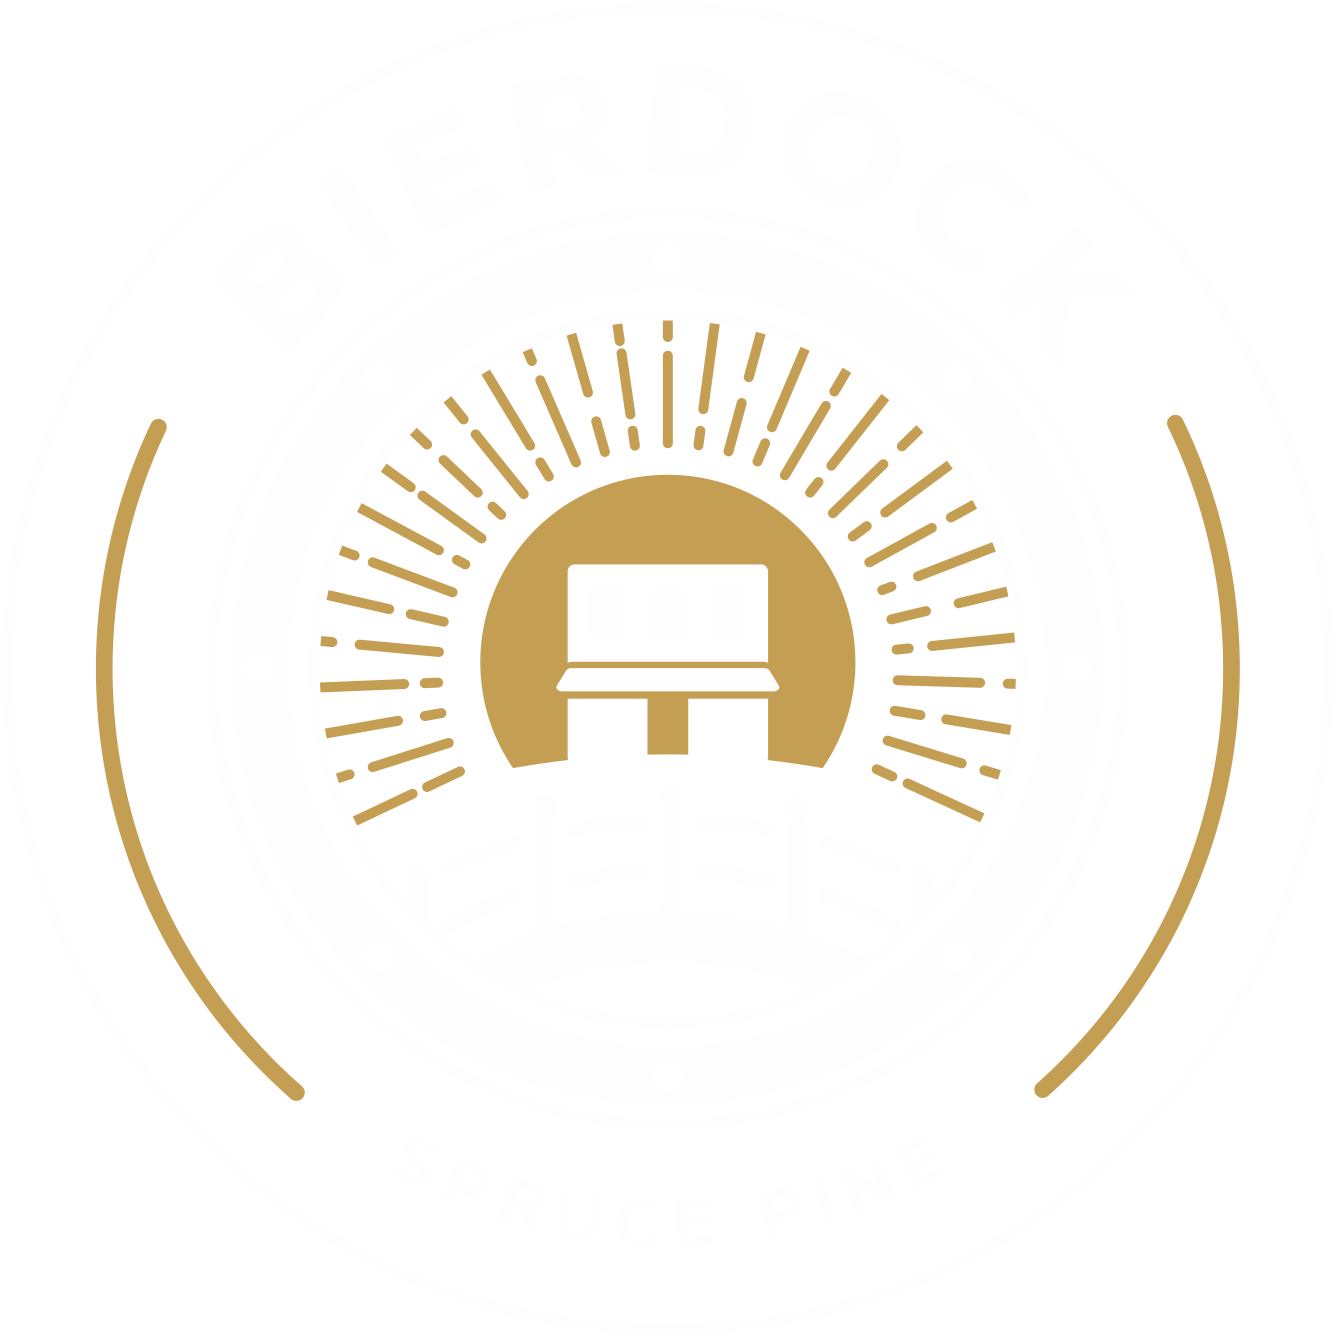 Bierdock Brewery